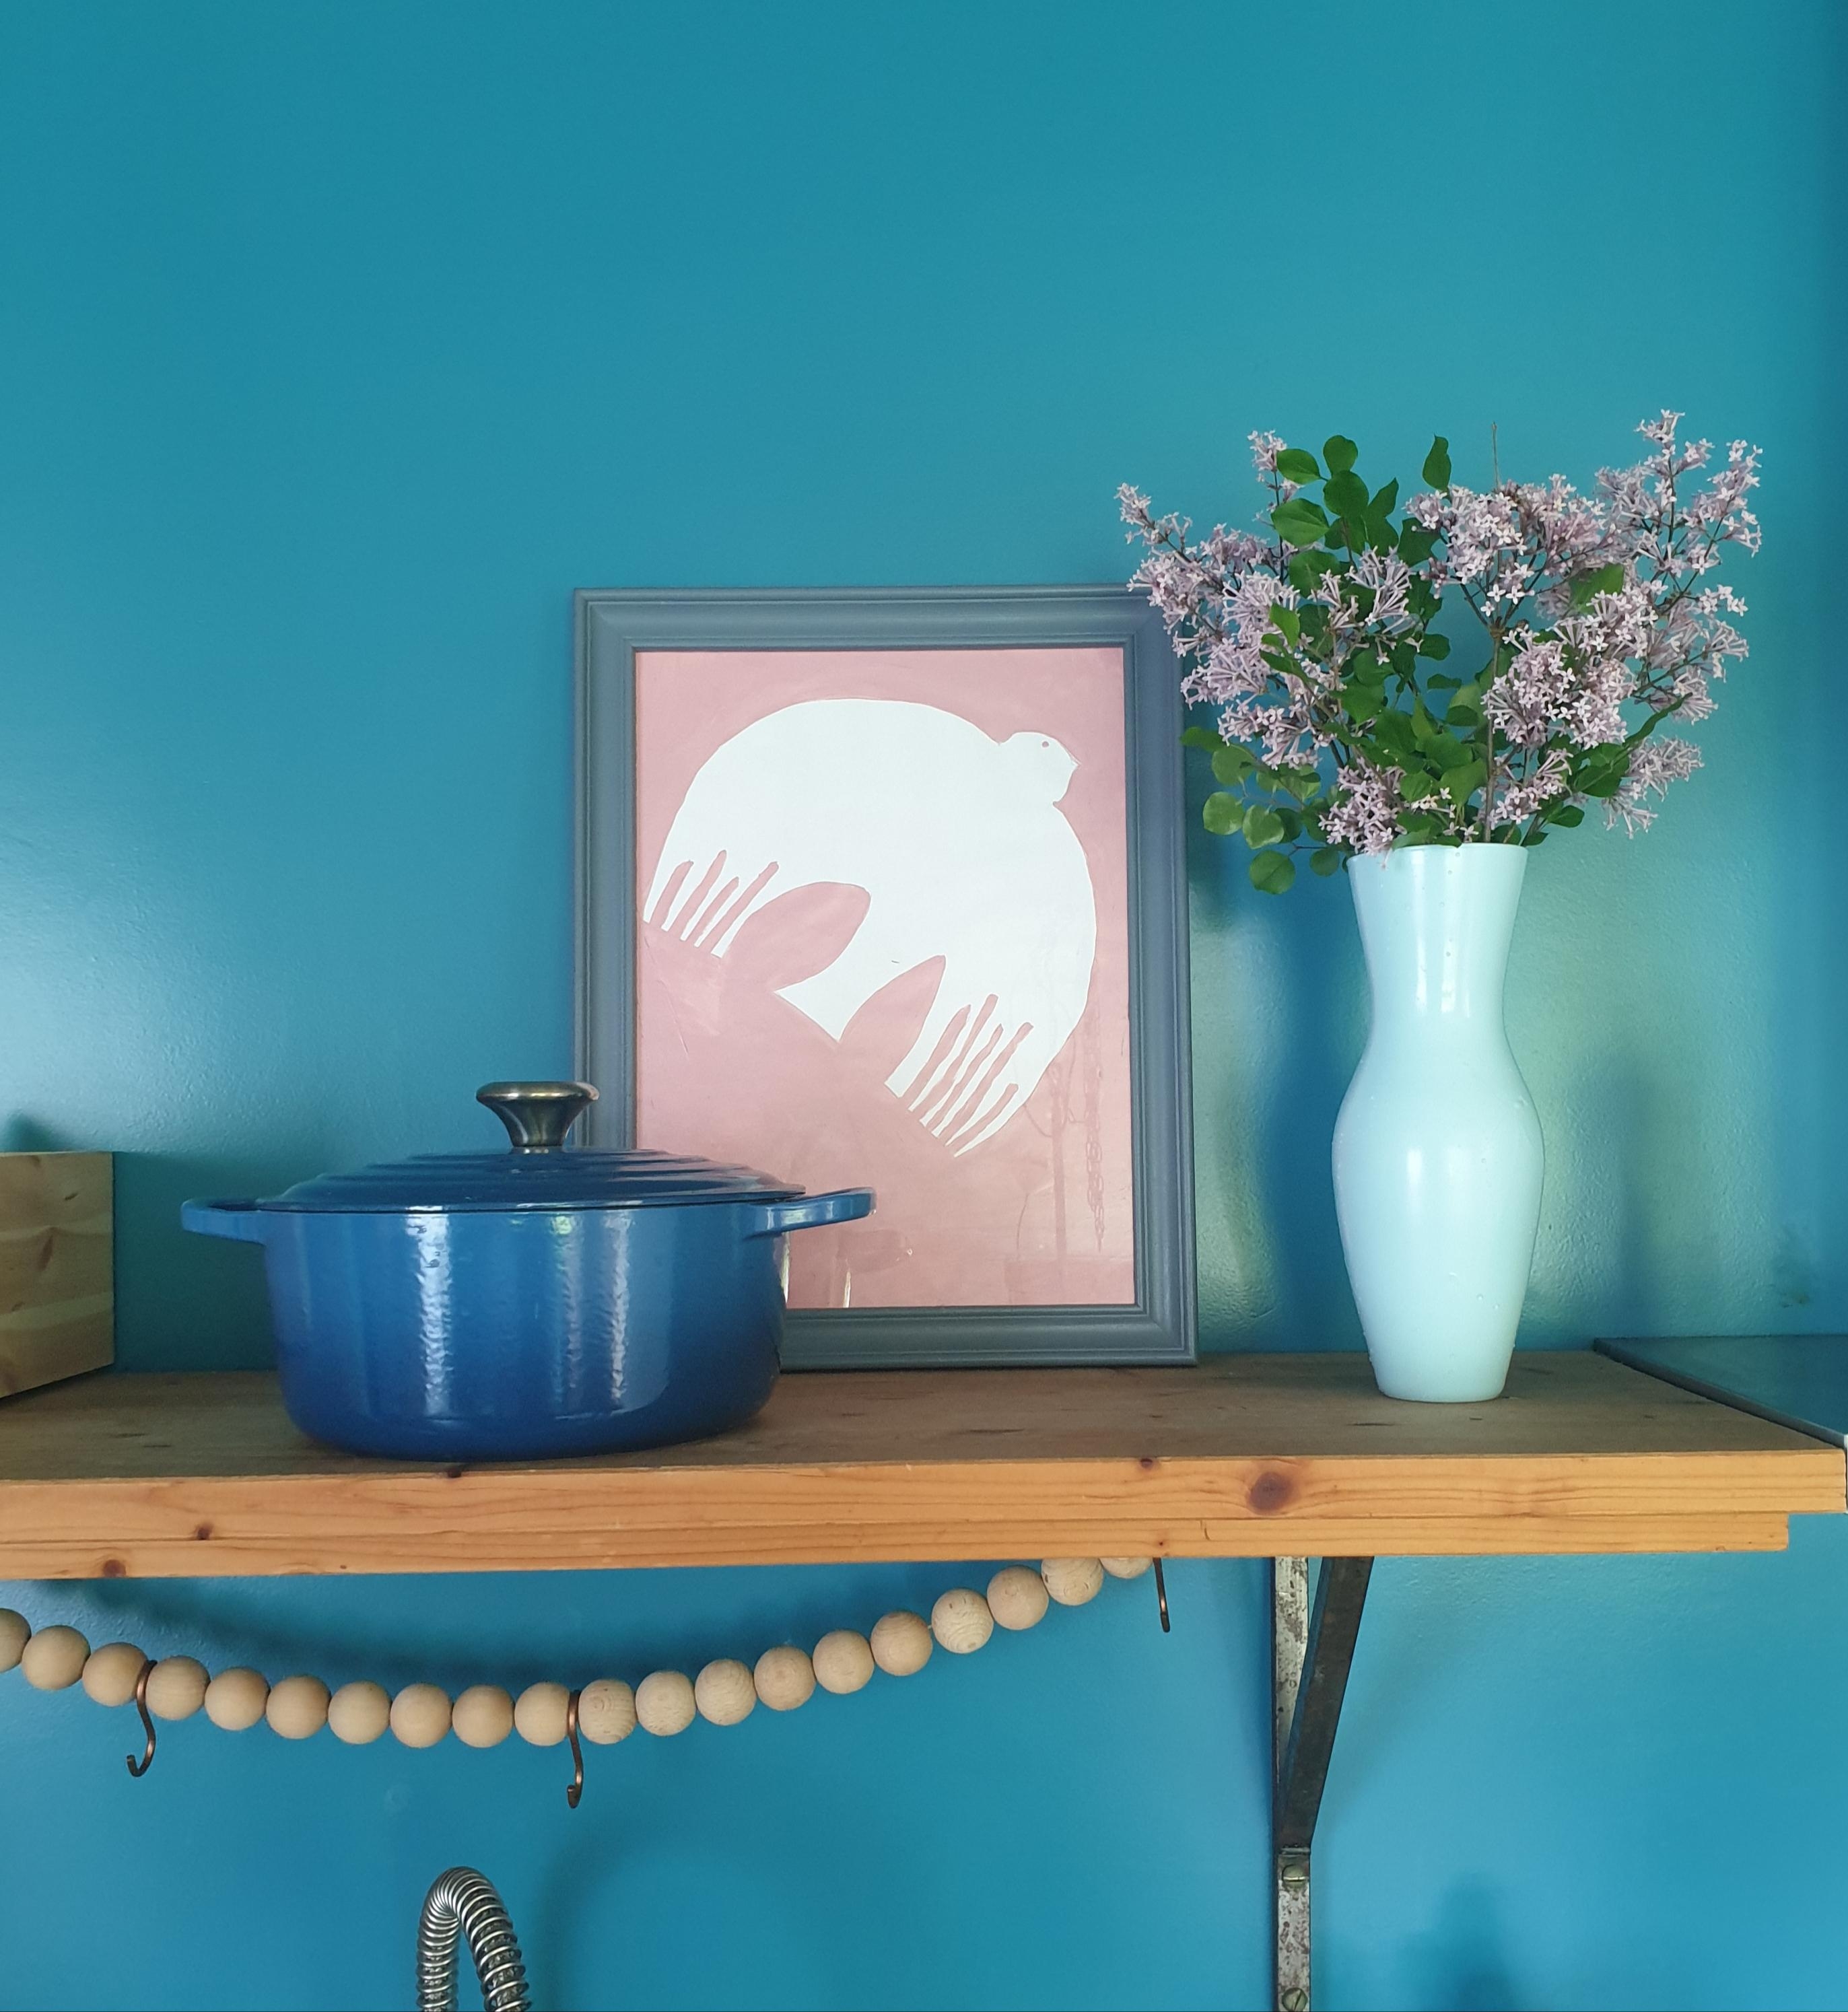 Auf dem Küchenregal..ich liebe den Duft
#Vase#Flieder#blau#babyblau#Regal